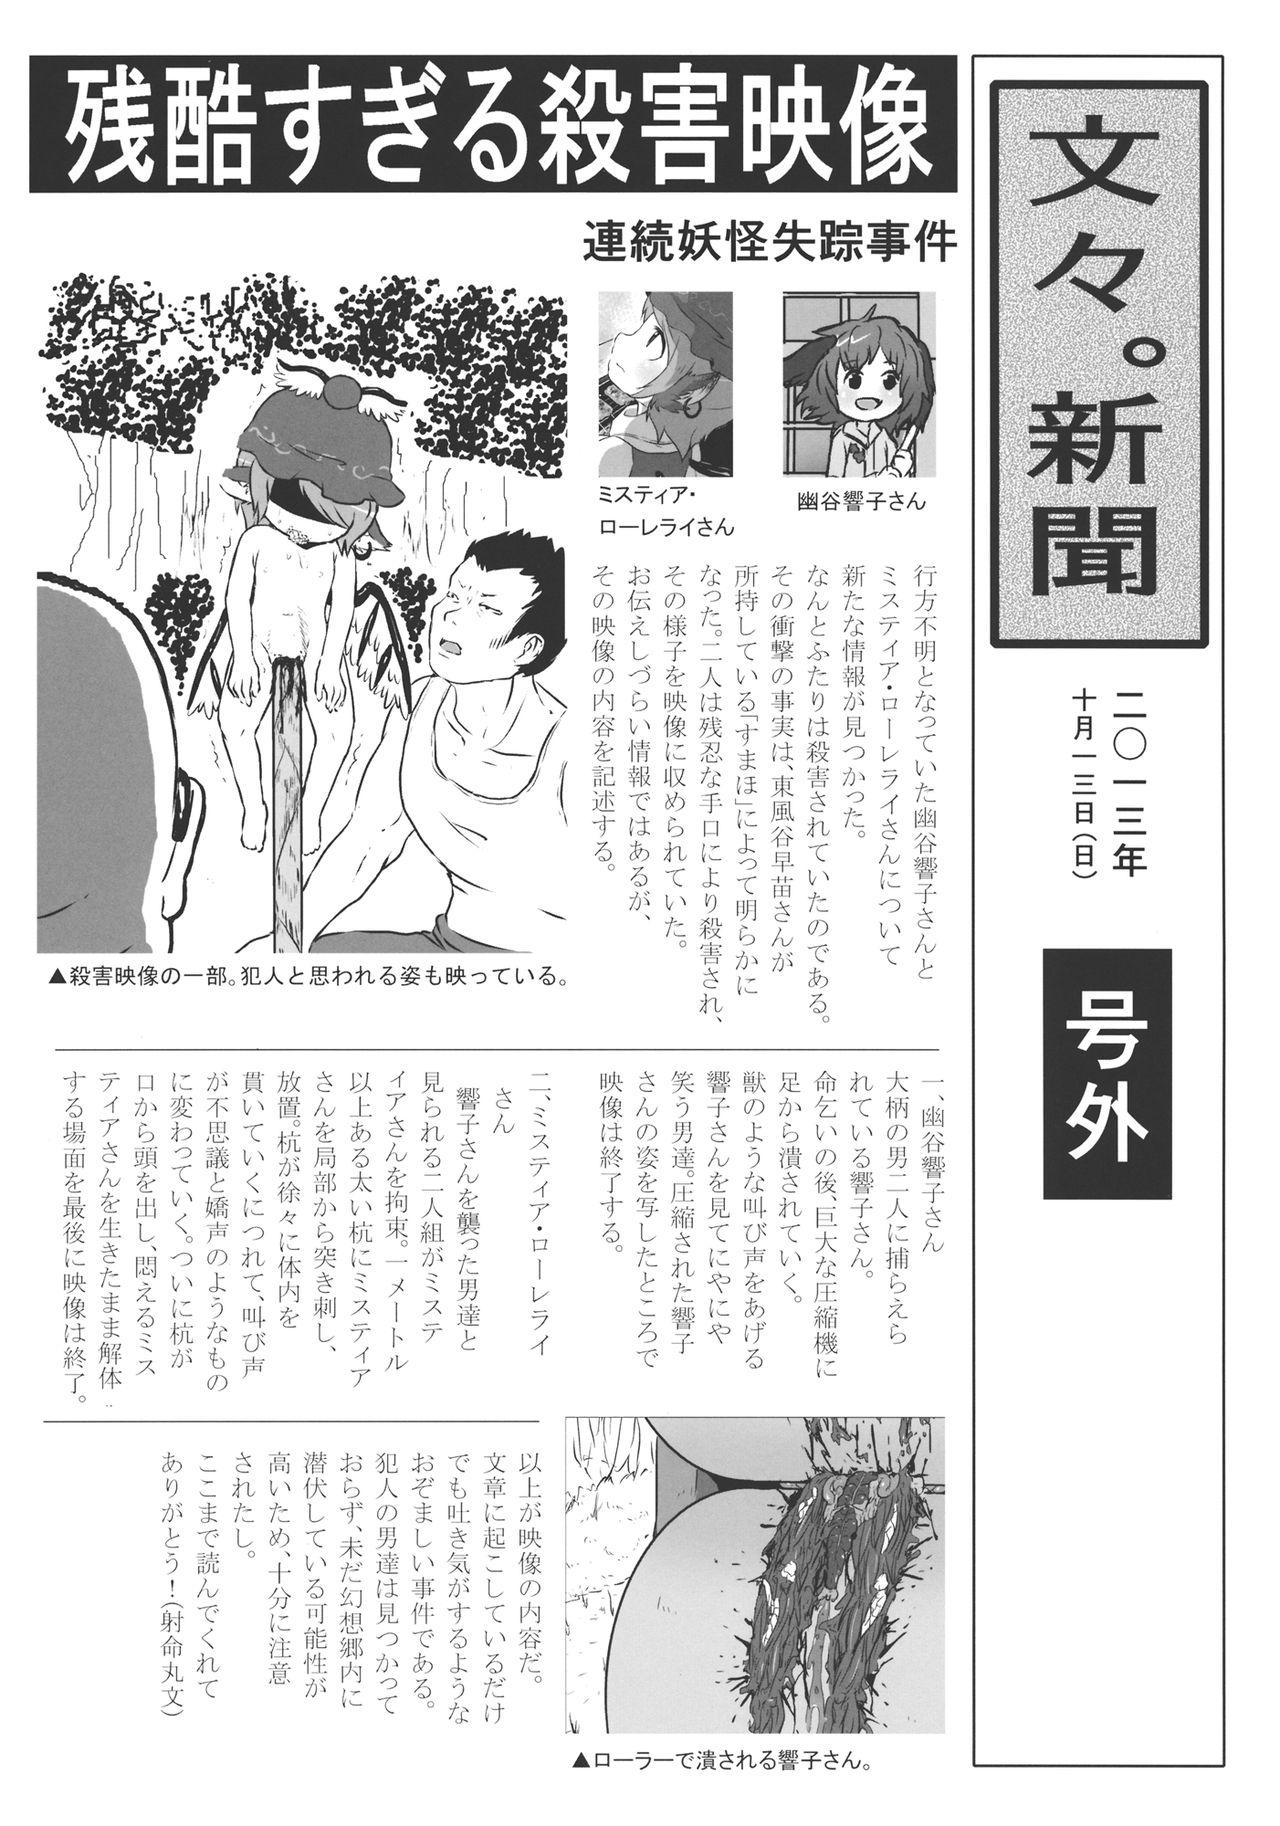 Fetiche (Kouroumu 9) [02 (Harasaki)] (Kojin Satsuei)(Touhou)(Kouroumu 9)[02] Touhou snuff vol.3 Kawashiro Nitori (Mushuusei) (Loli-kei Youjo no Kirei na Hadaka wo Suki Houdai shichai mashita!).avi (Touhou Project) [布洛基个人汉化] - Touhou project Naughty - Page 4